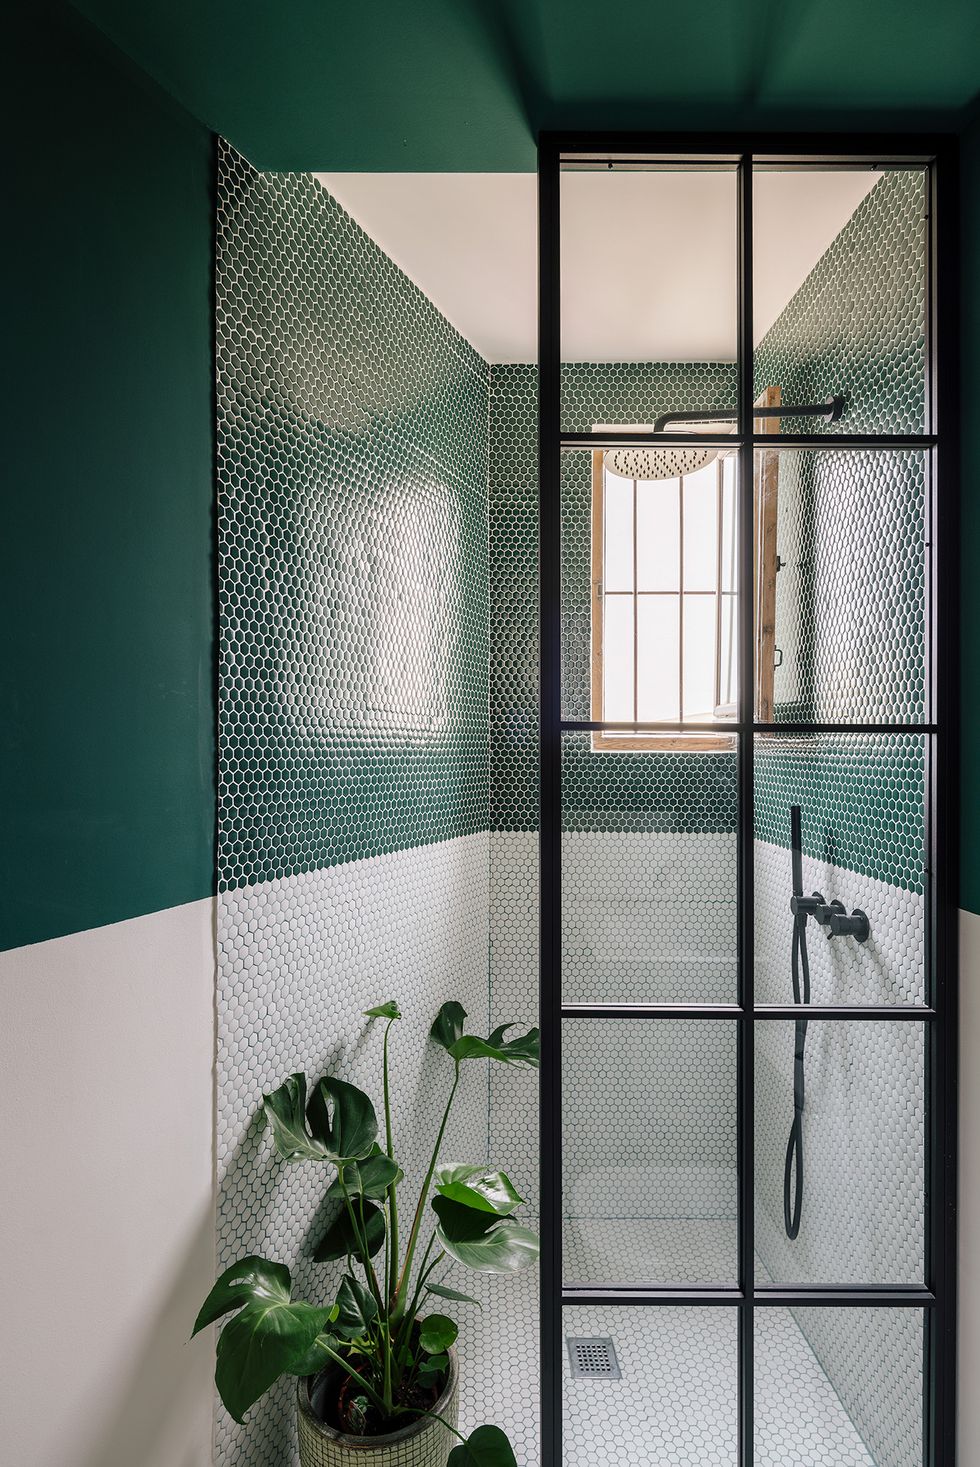 Phòng tắm này lôi cuốn nhờ màu sơn và đá ốp tường màu xanh ngọc lục bảo thời thượng. Bên dưới, chậu cây nổi bật trên nền tường trắng cho không gian sinh động.